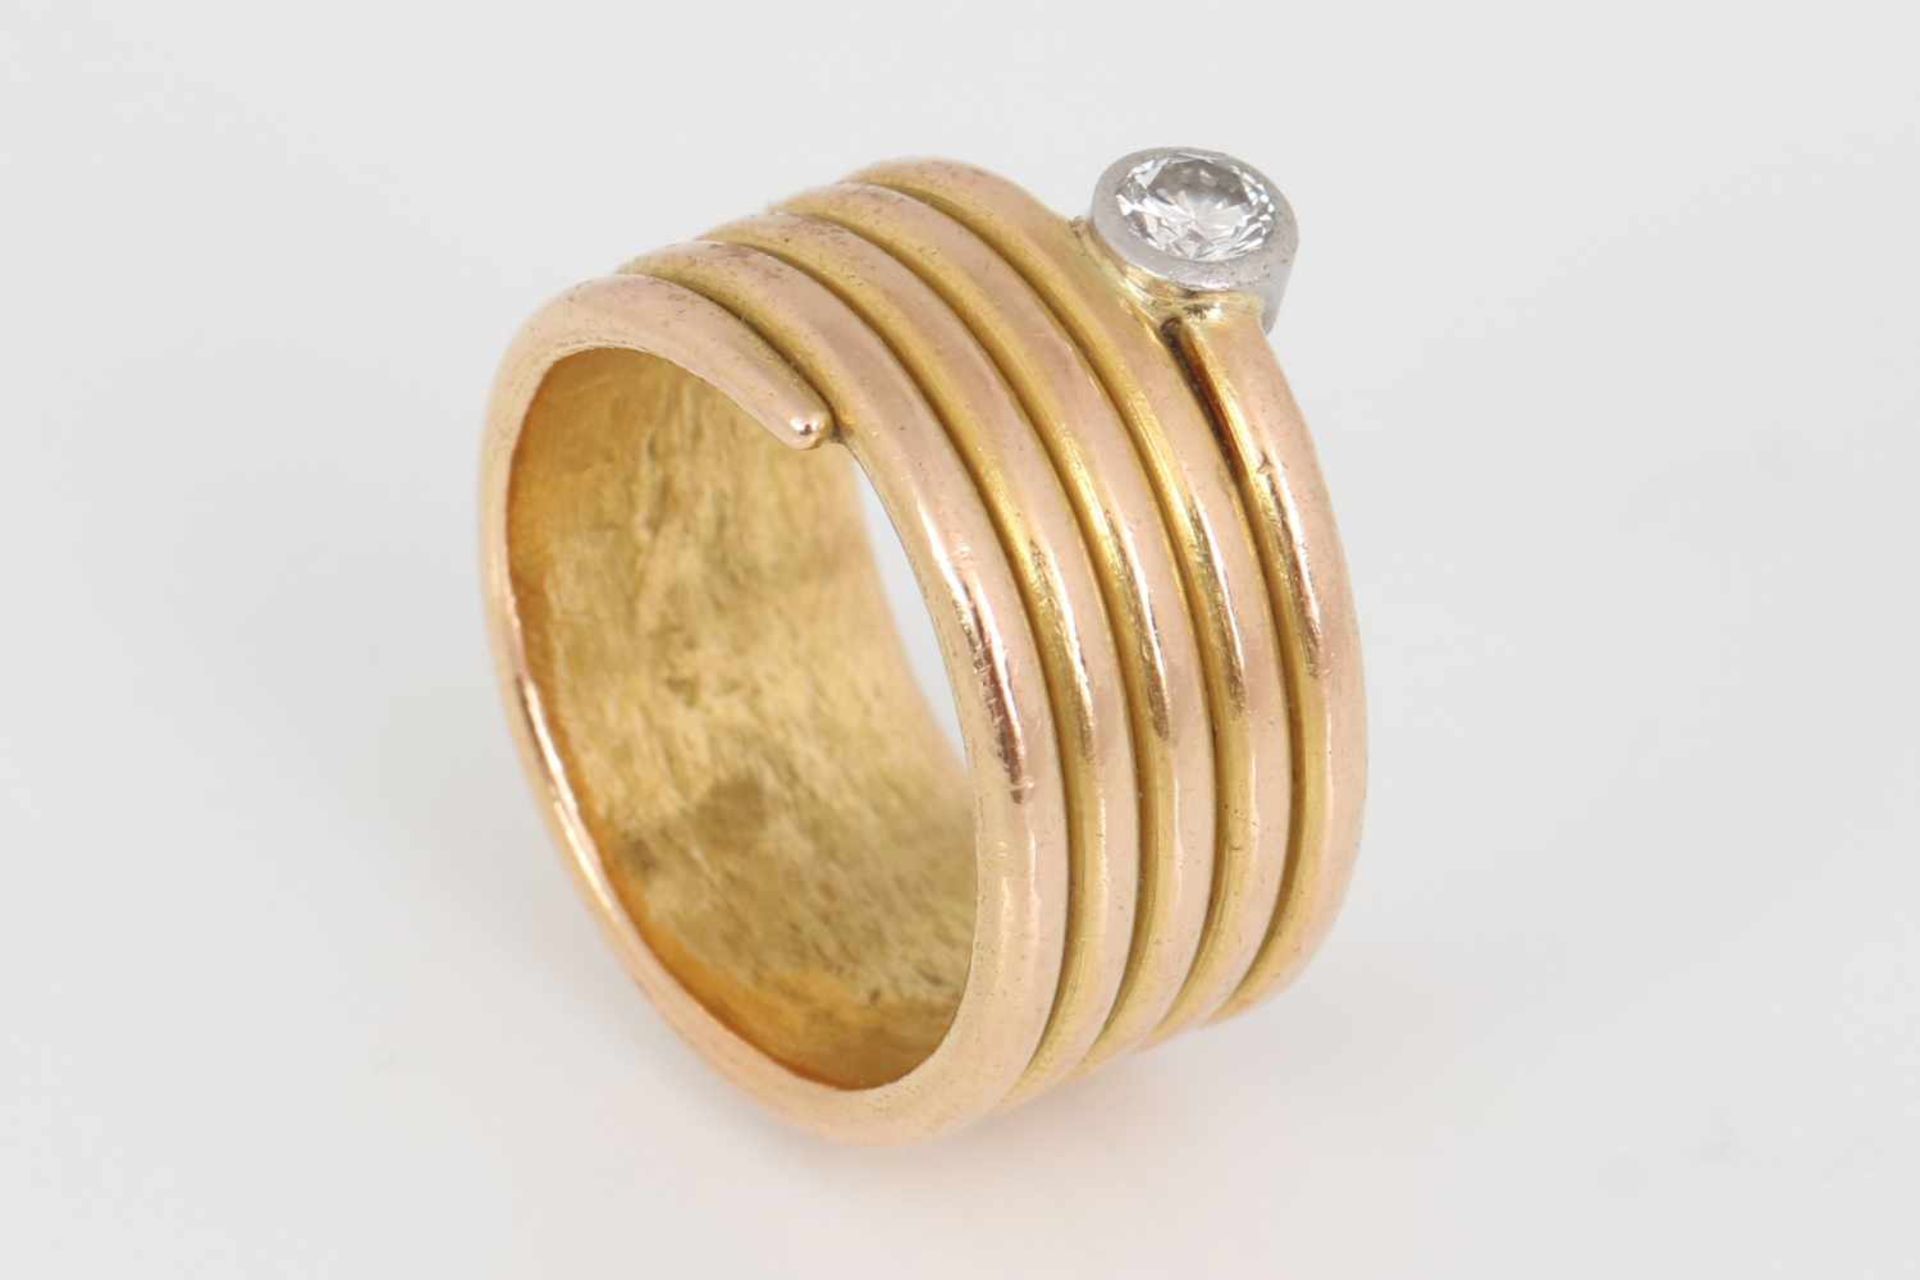 Goldring mit DiamantRoségold, spiralförmige, breite Schiene, 1 Brillant, ca. 0,15ct., vsi, Gewicht - Bild 2 aus 2